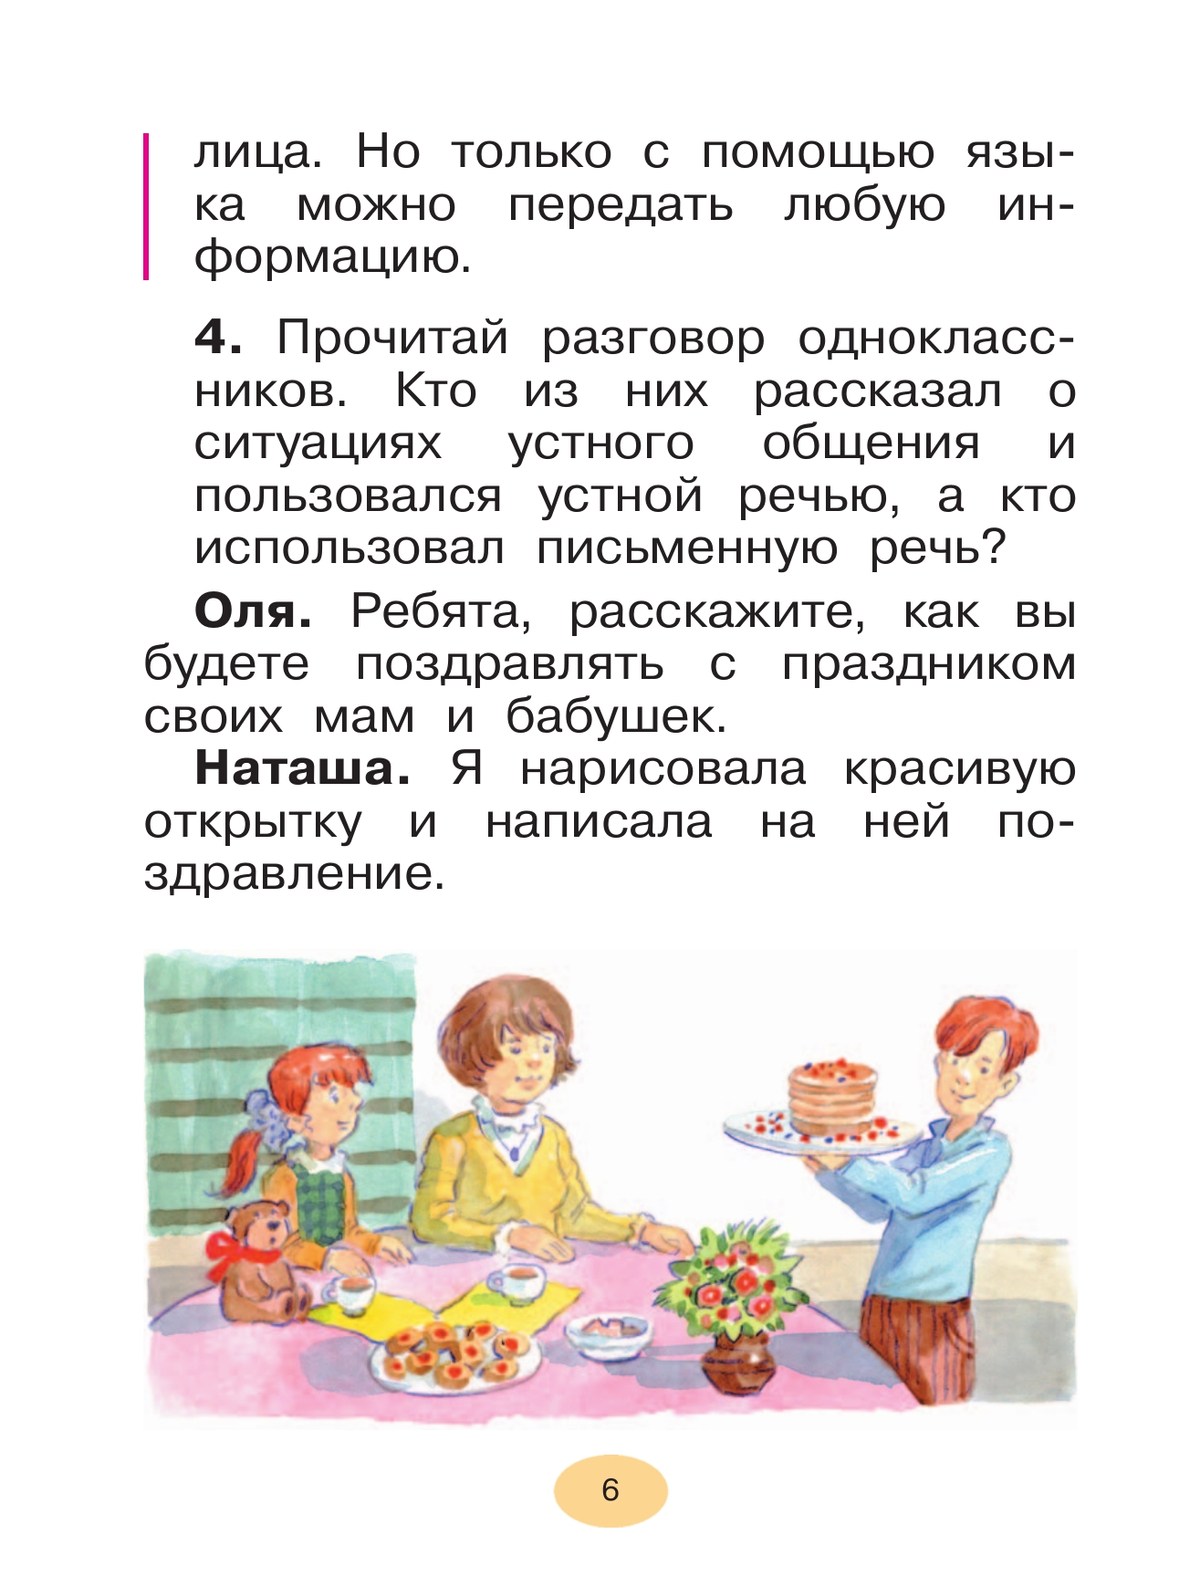 Русский язык. 1 класс. Учебное пособие 5